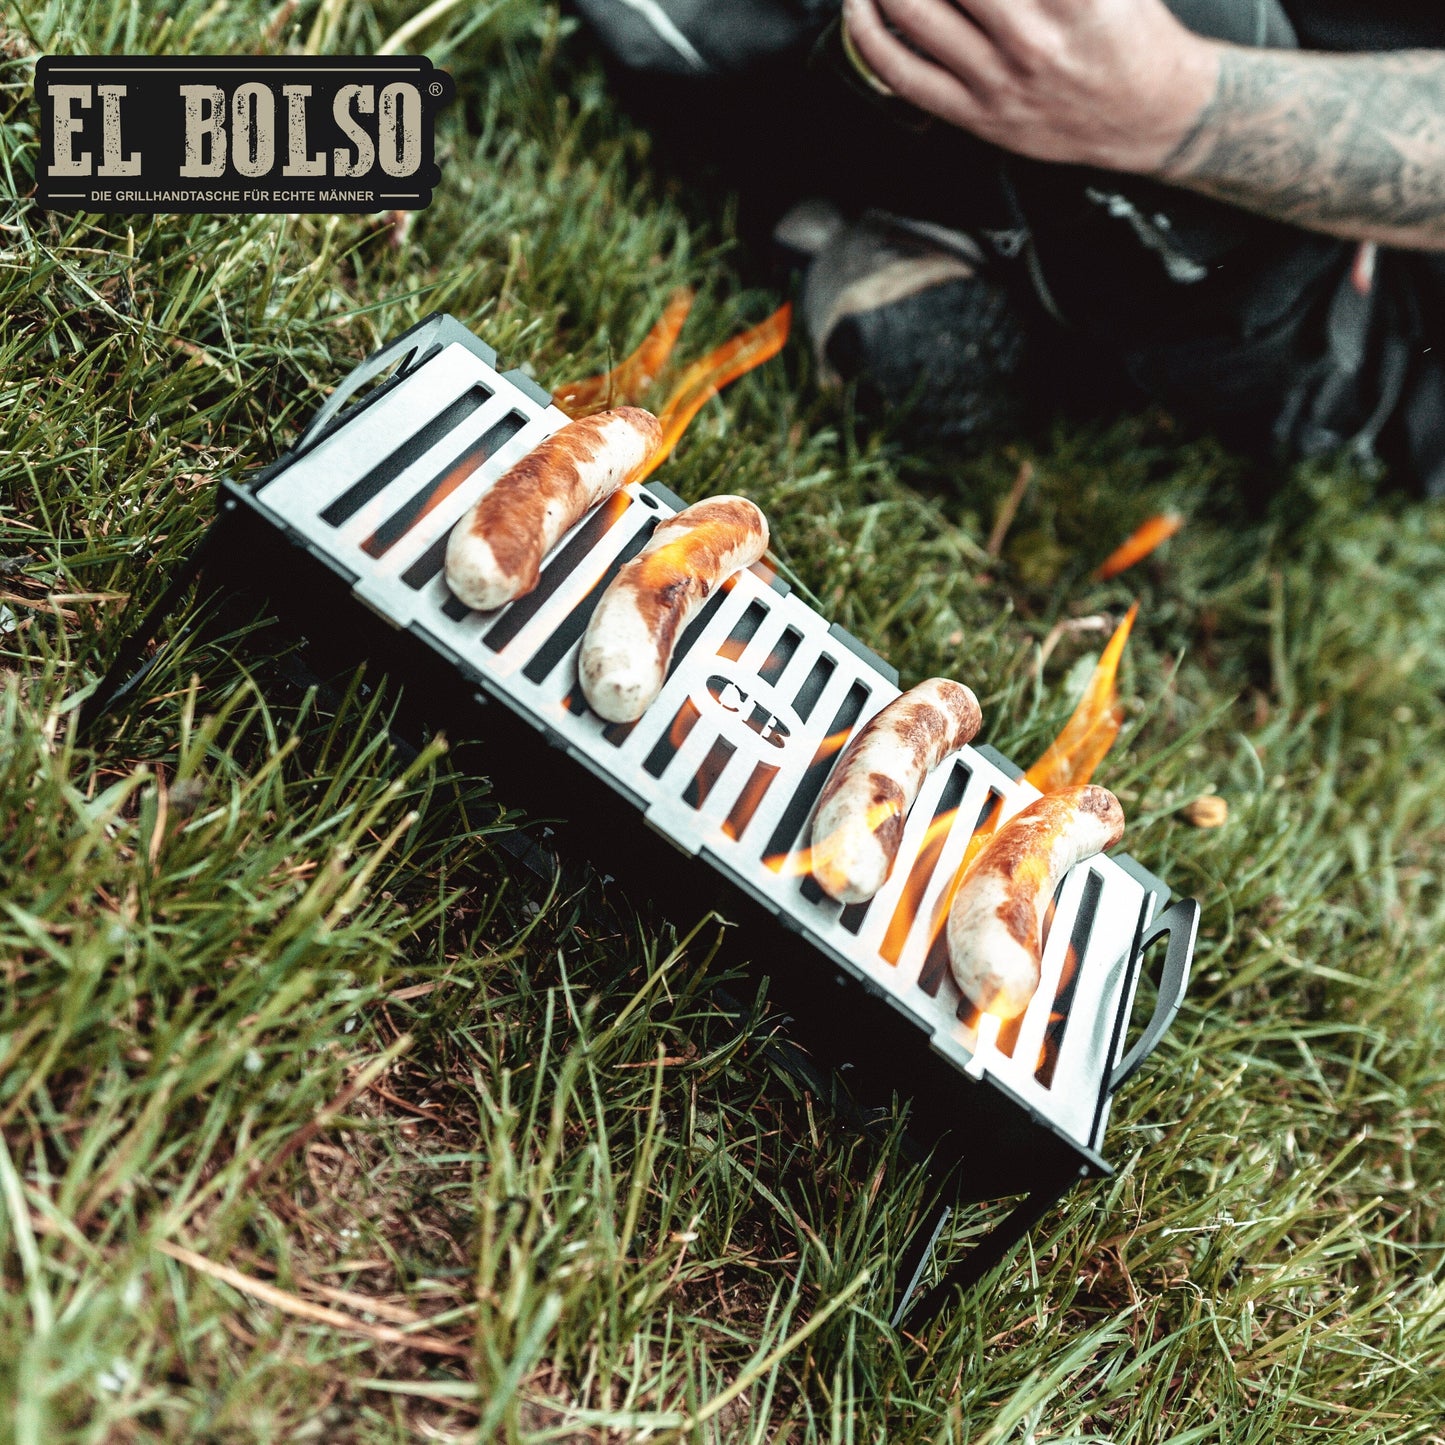 Barbecue Grill - EL BOLSO Edelstahl-Edition Craftbrothers 